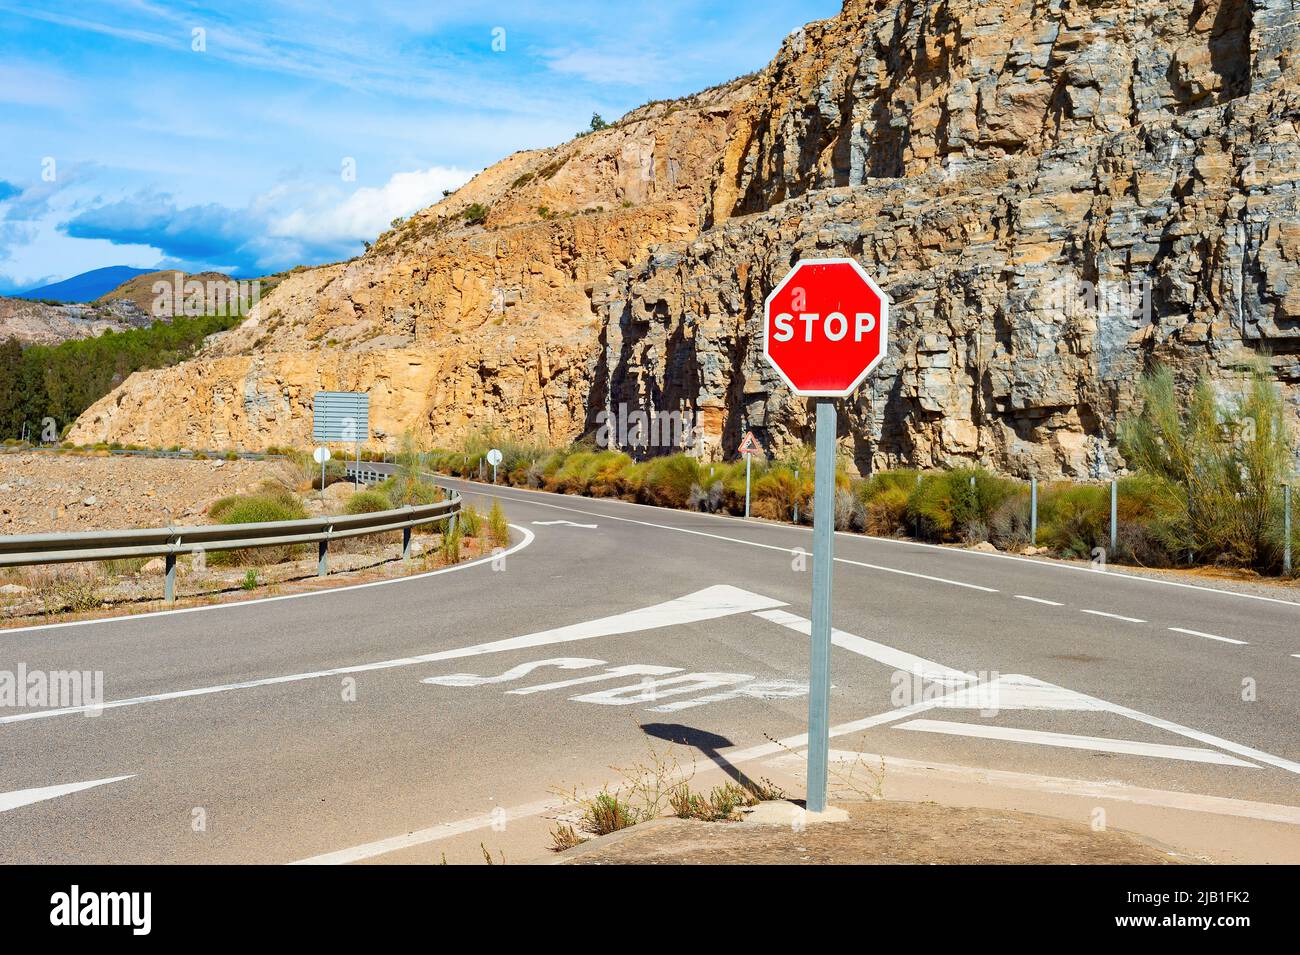 Señal de parada en carretera de montaña, paisaje soleado, España Foto de stock